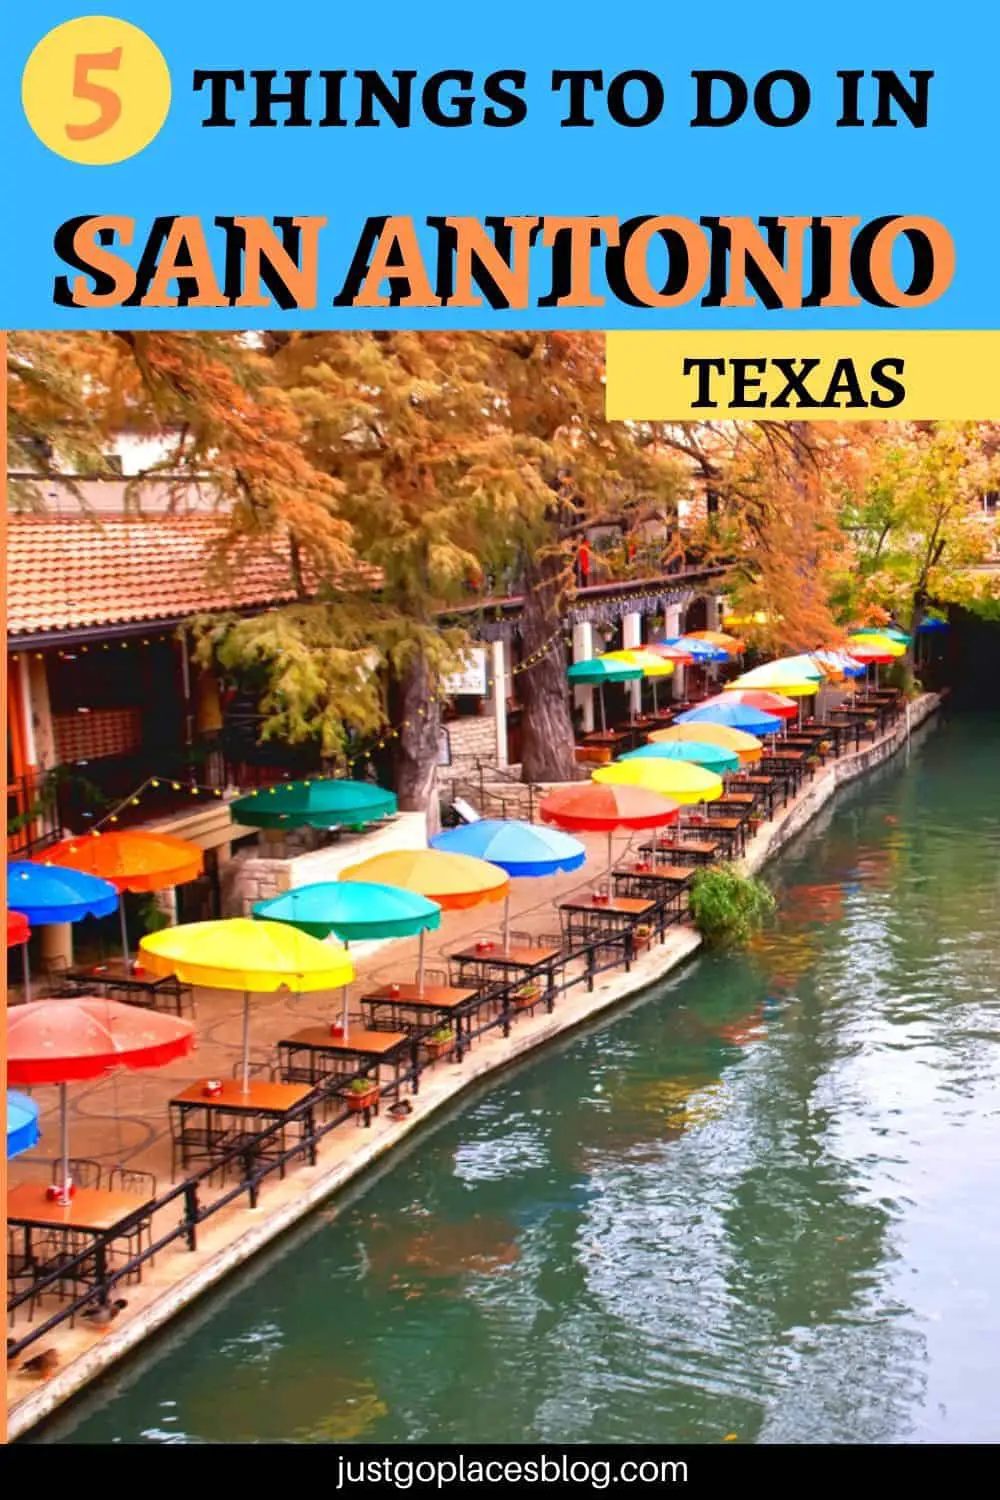 San Antonio Attractions include the San Antonio River Walk